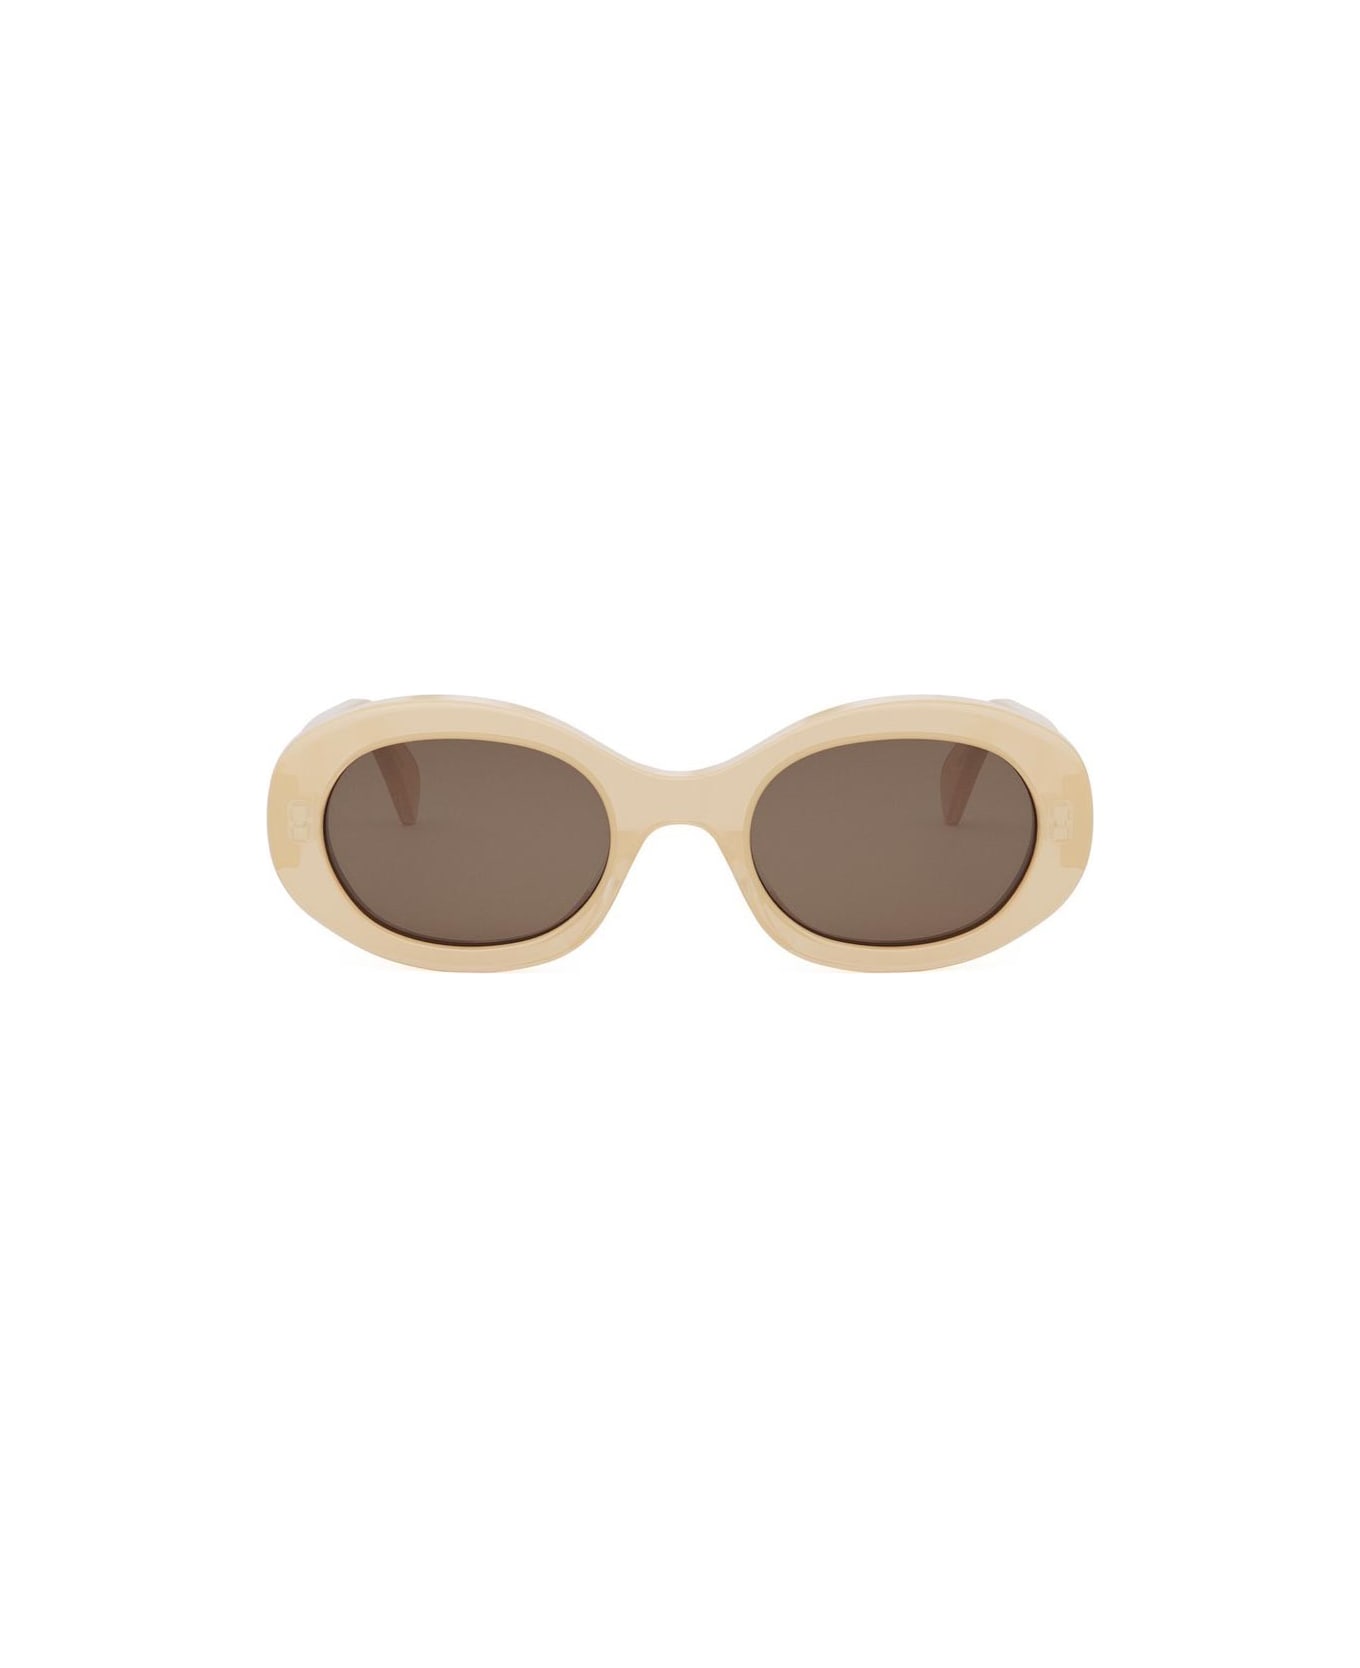 Celine Sunglasses - Cipria/Marrone サングラス